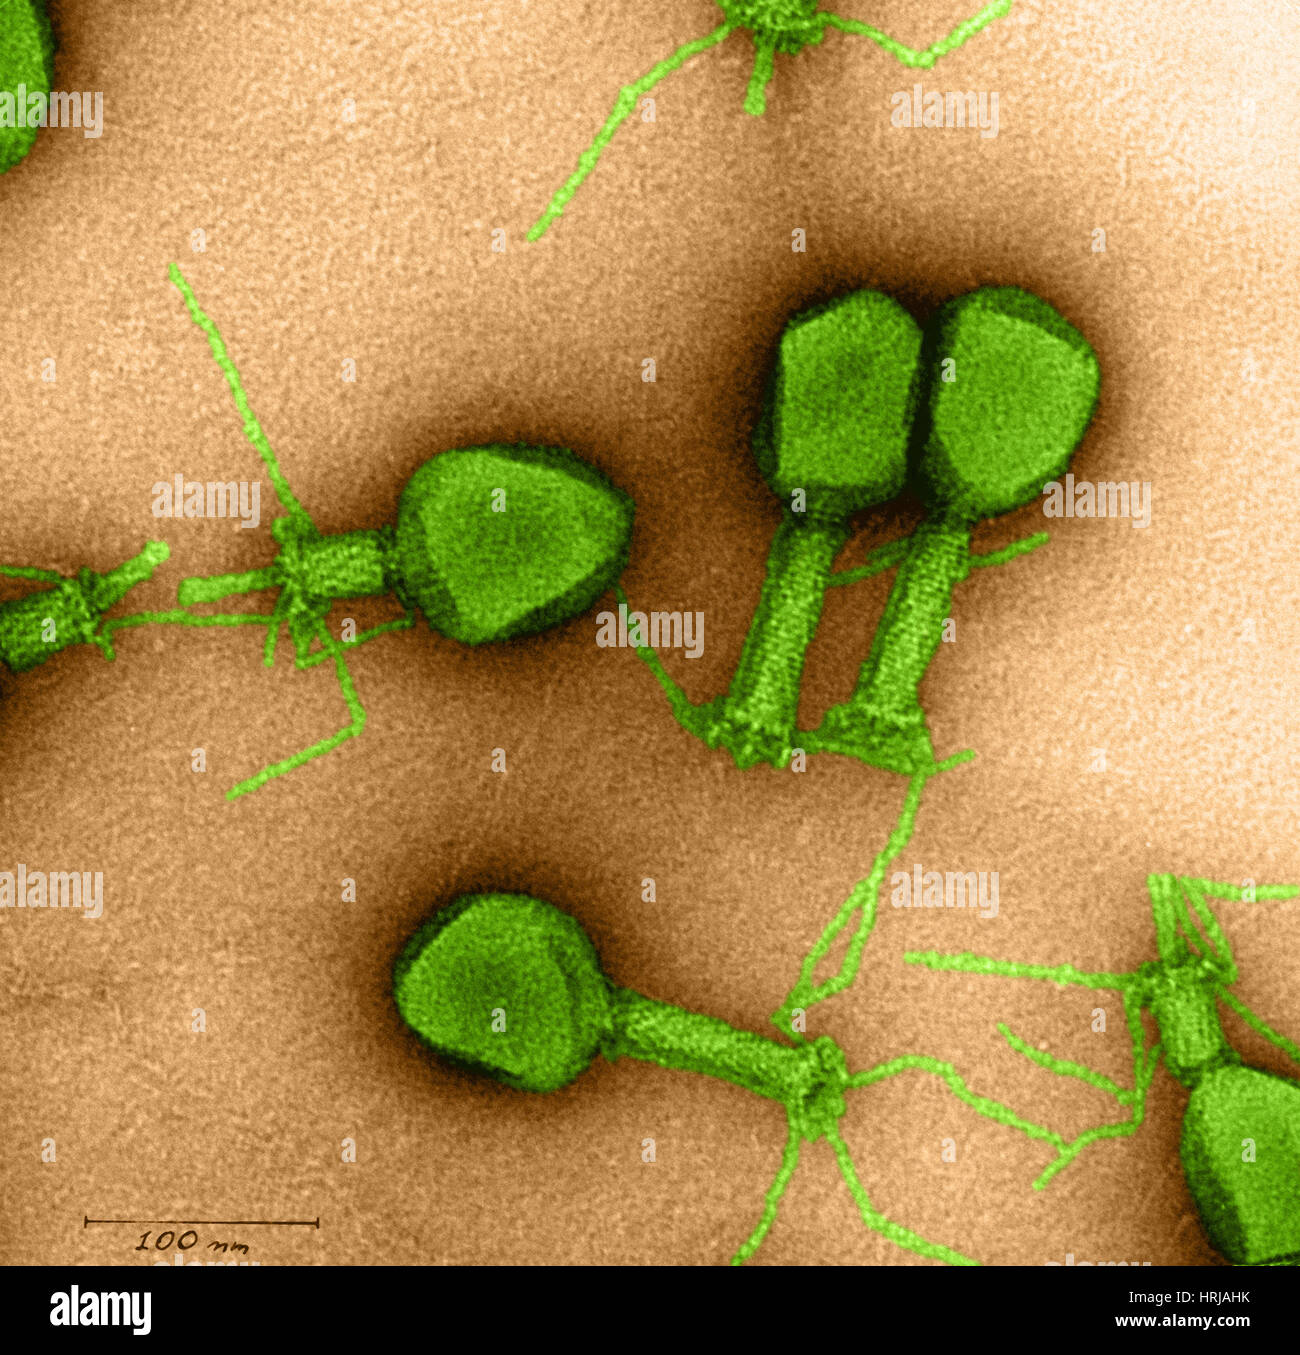 Enterobacteria phage T4 Stock Photo